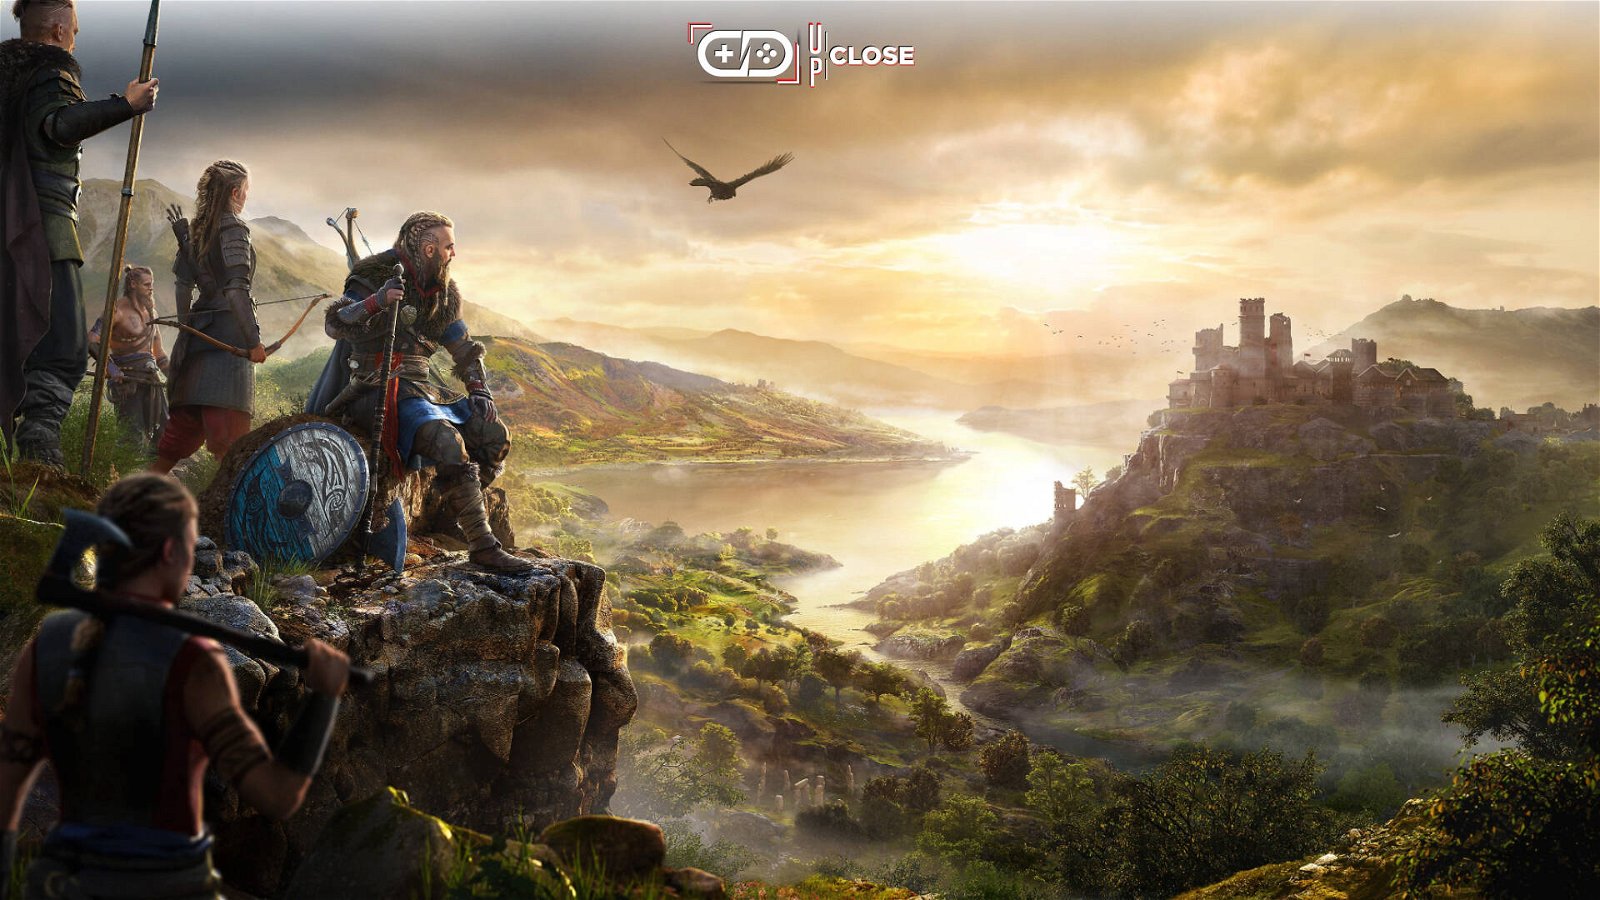 Immagine di Assassin's Creed Valhalla insegna giocando, l'esempio perfetto di Gamification dell'istruzione